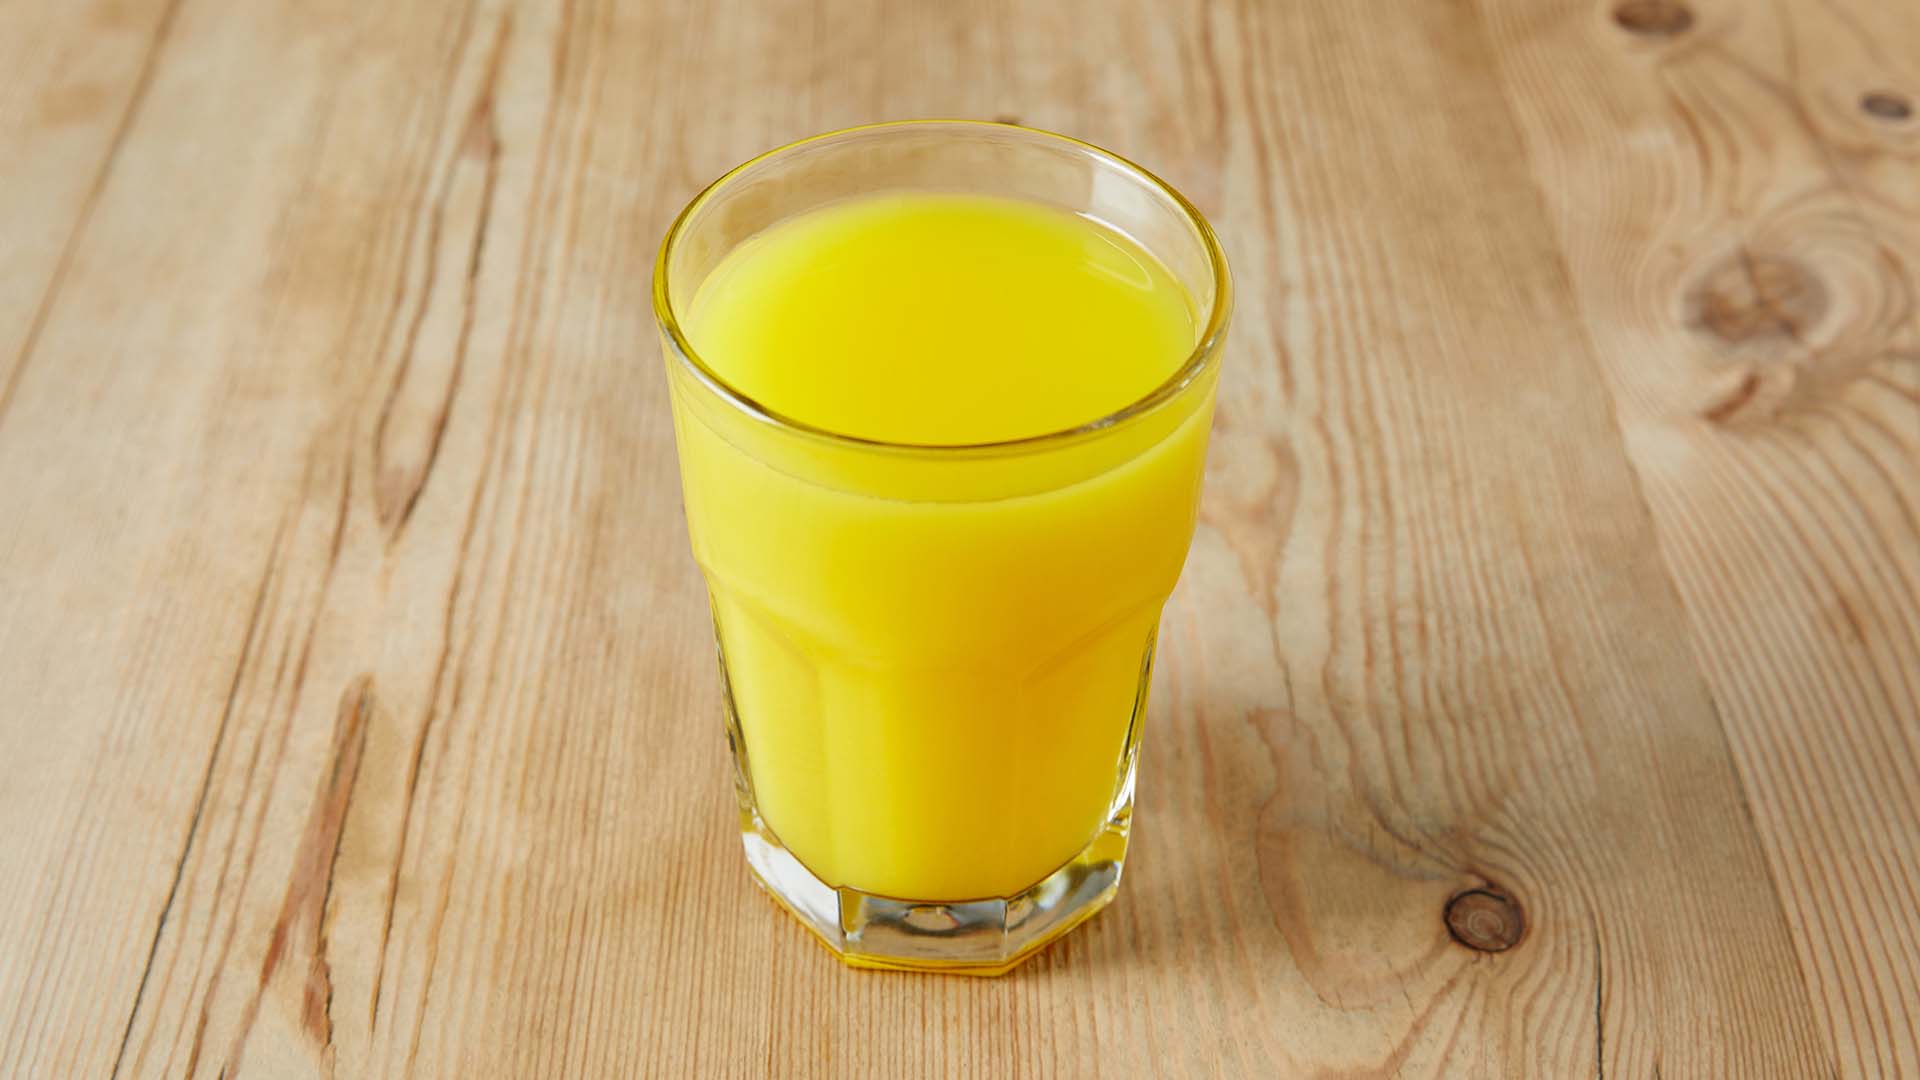 Le Pain Quotidien Orange Juice